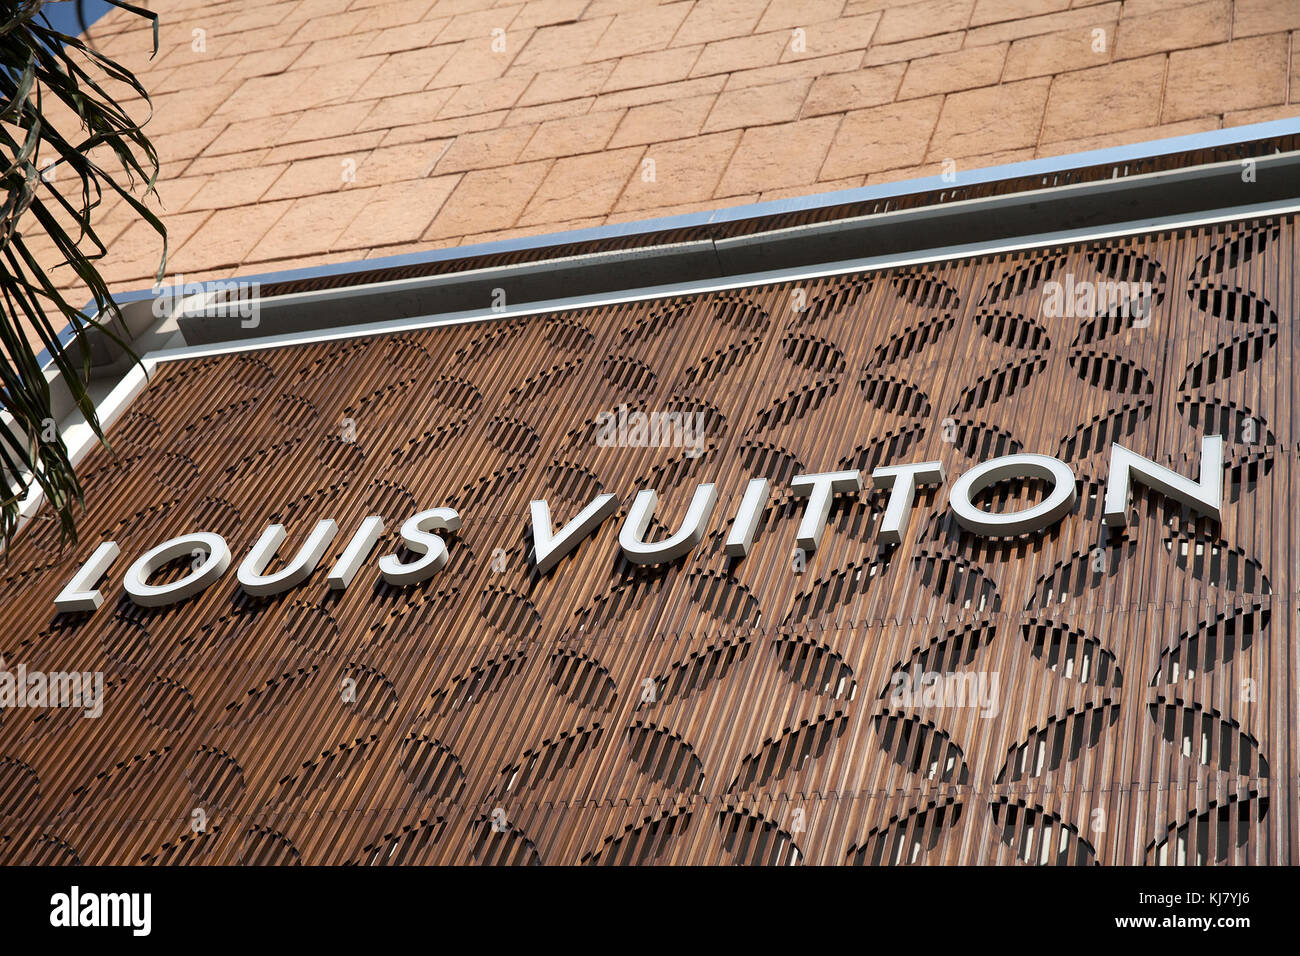 The Louis Vuitton Store in Palacio de Hierro Mexico City, Mexico Stock Photo - Alamy